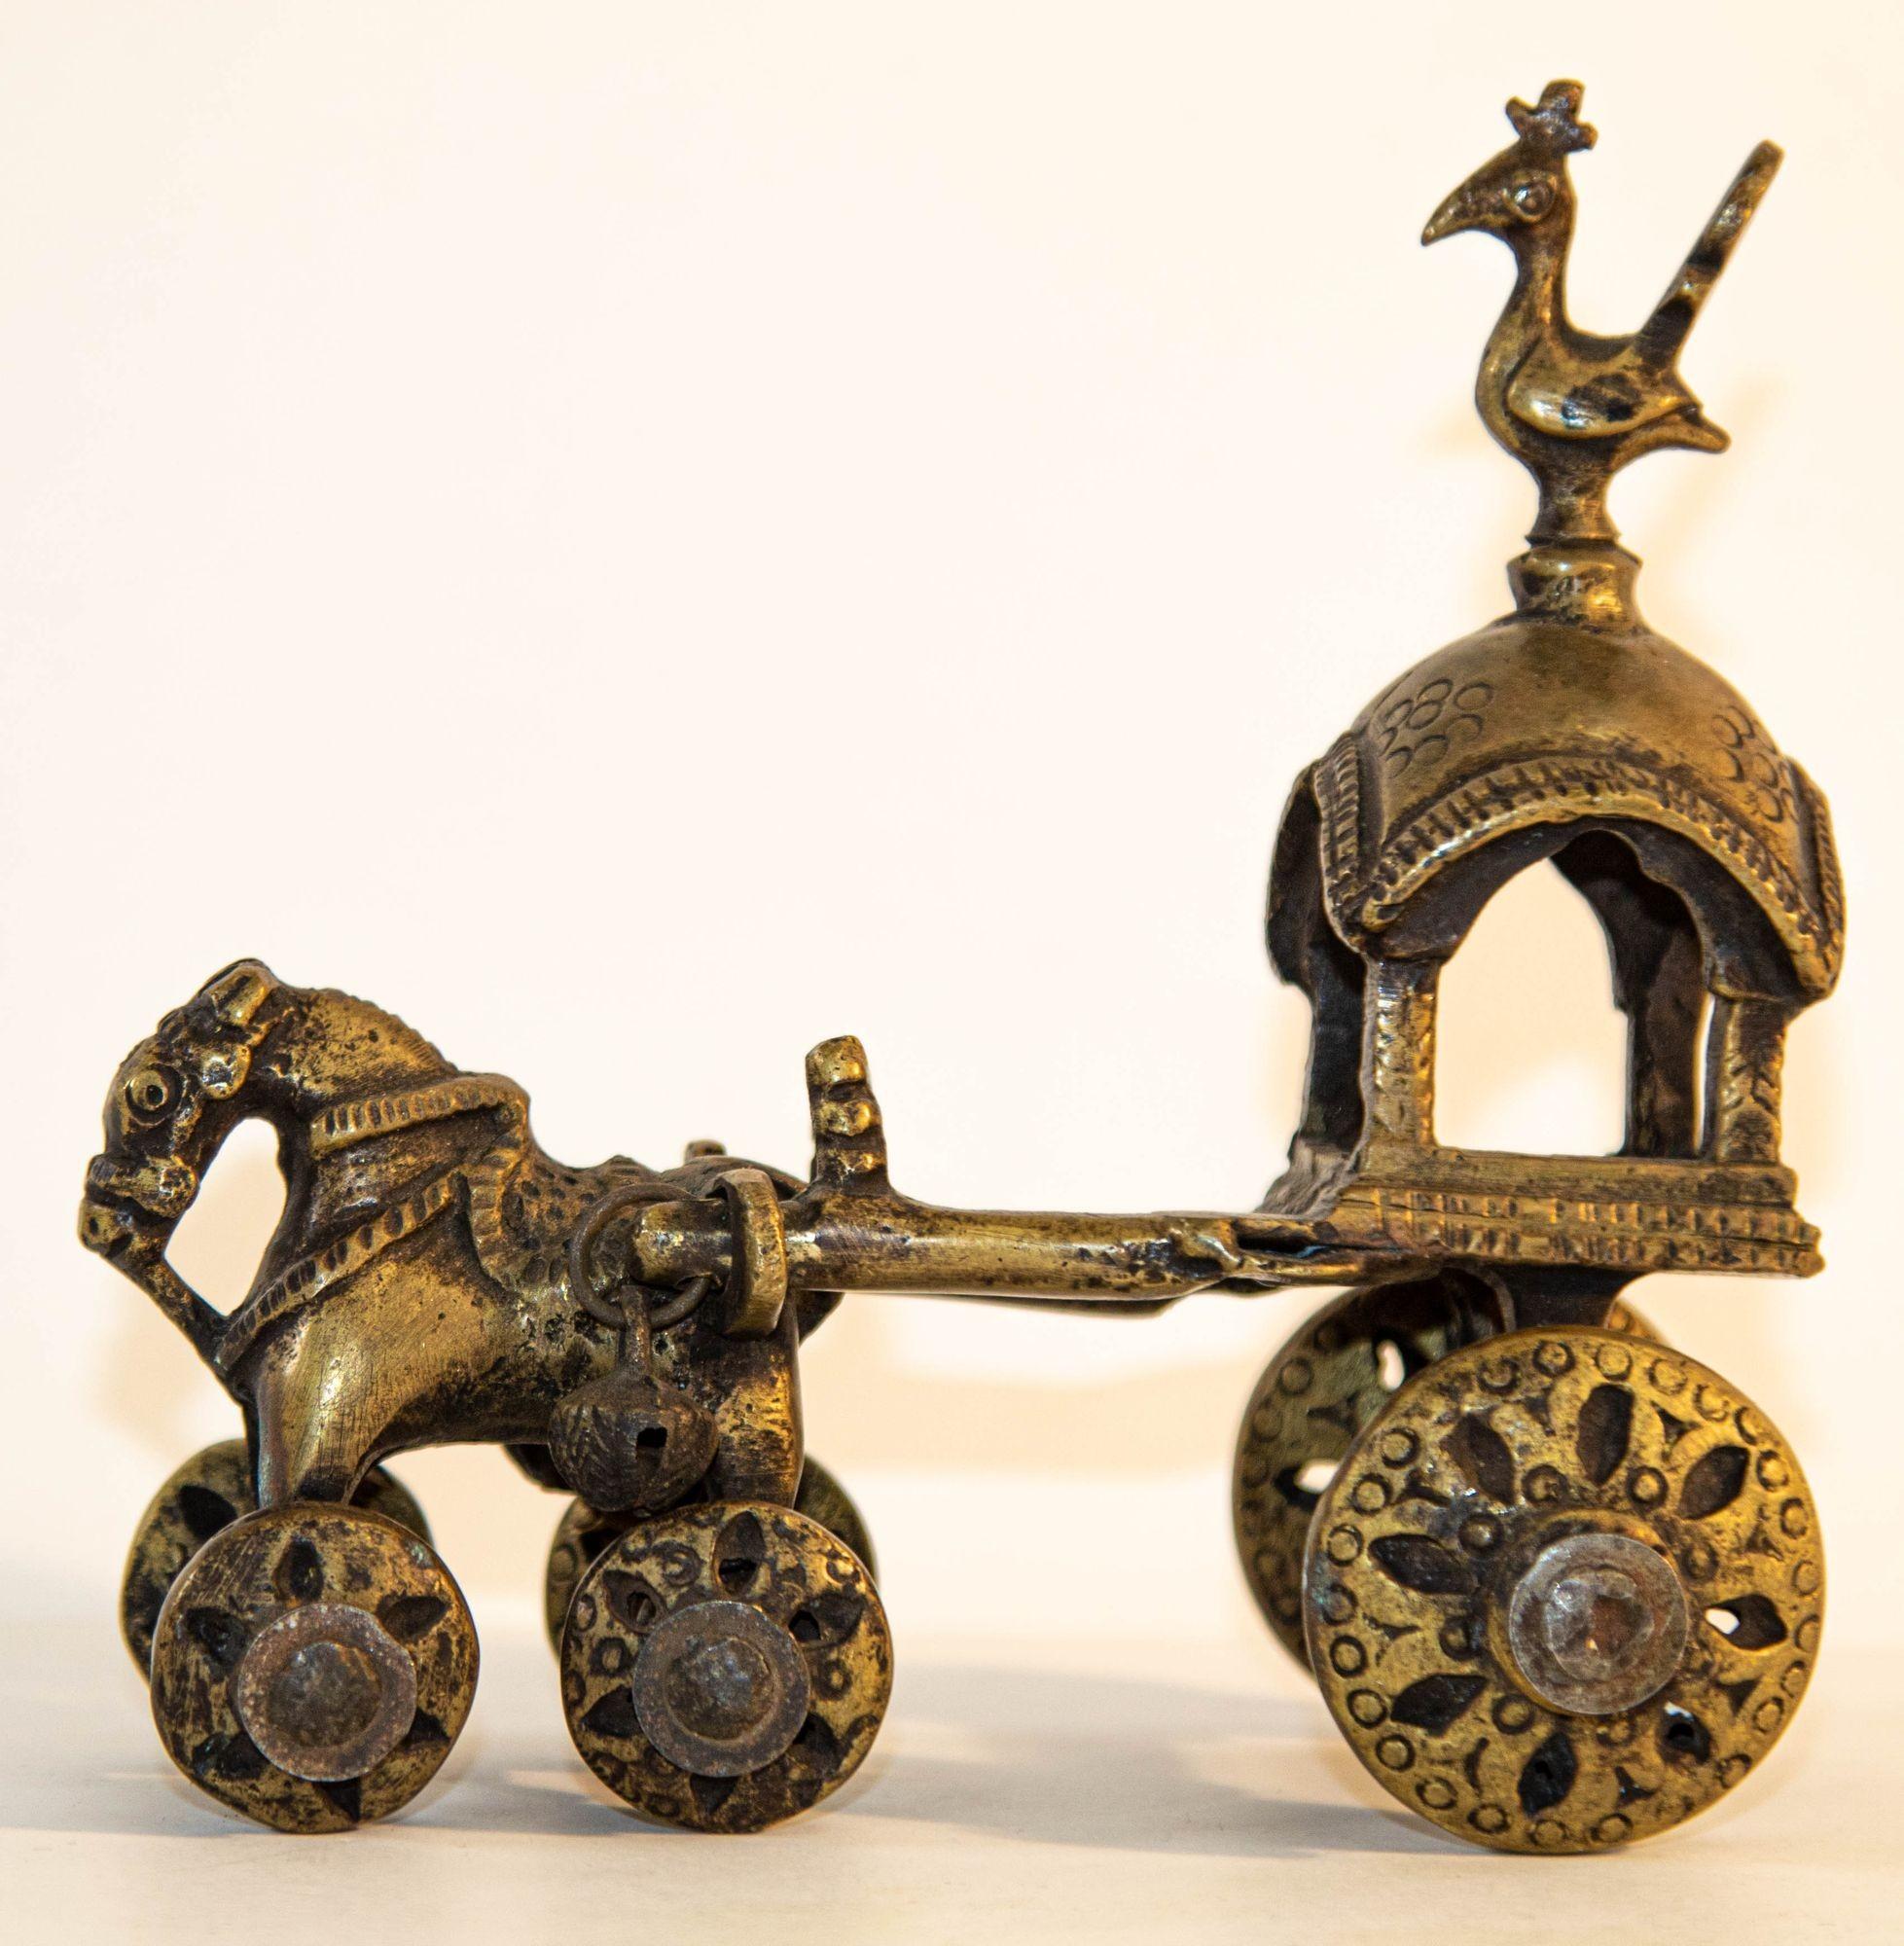 Antike hinduistische Bronze Tempel Pferd und Wagen Statue Spielzeug auf Rädern.
Diese gegossenen Messingfiguren sind gemeinhin als 